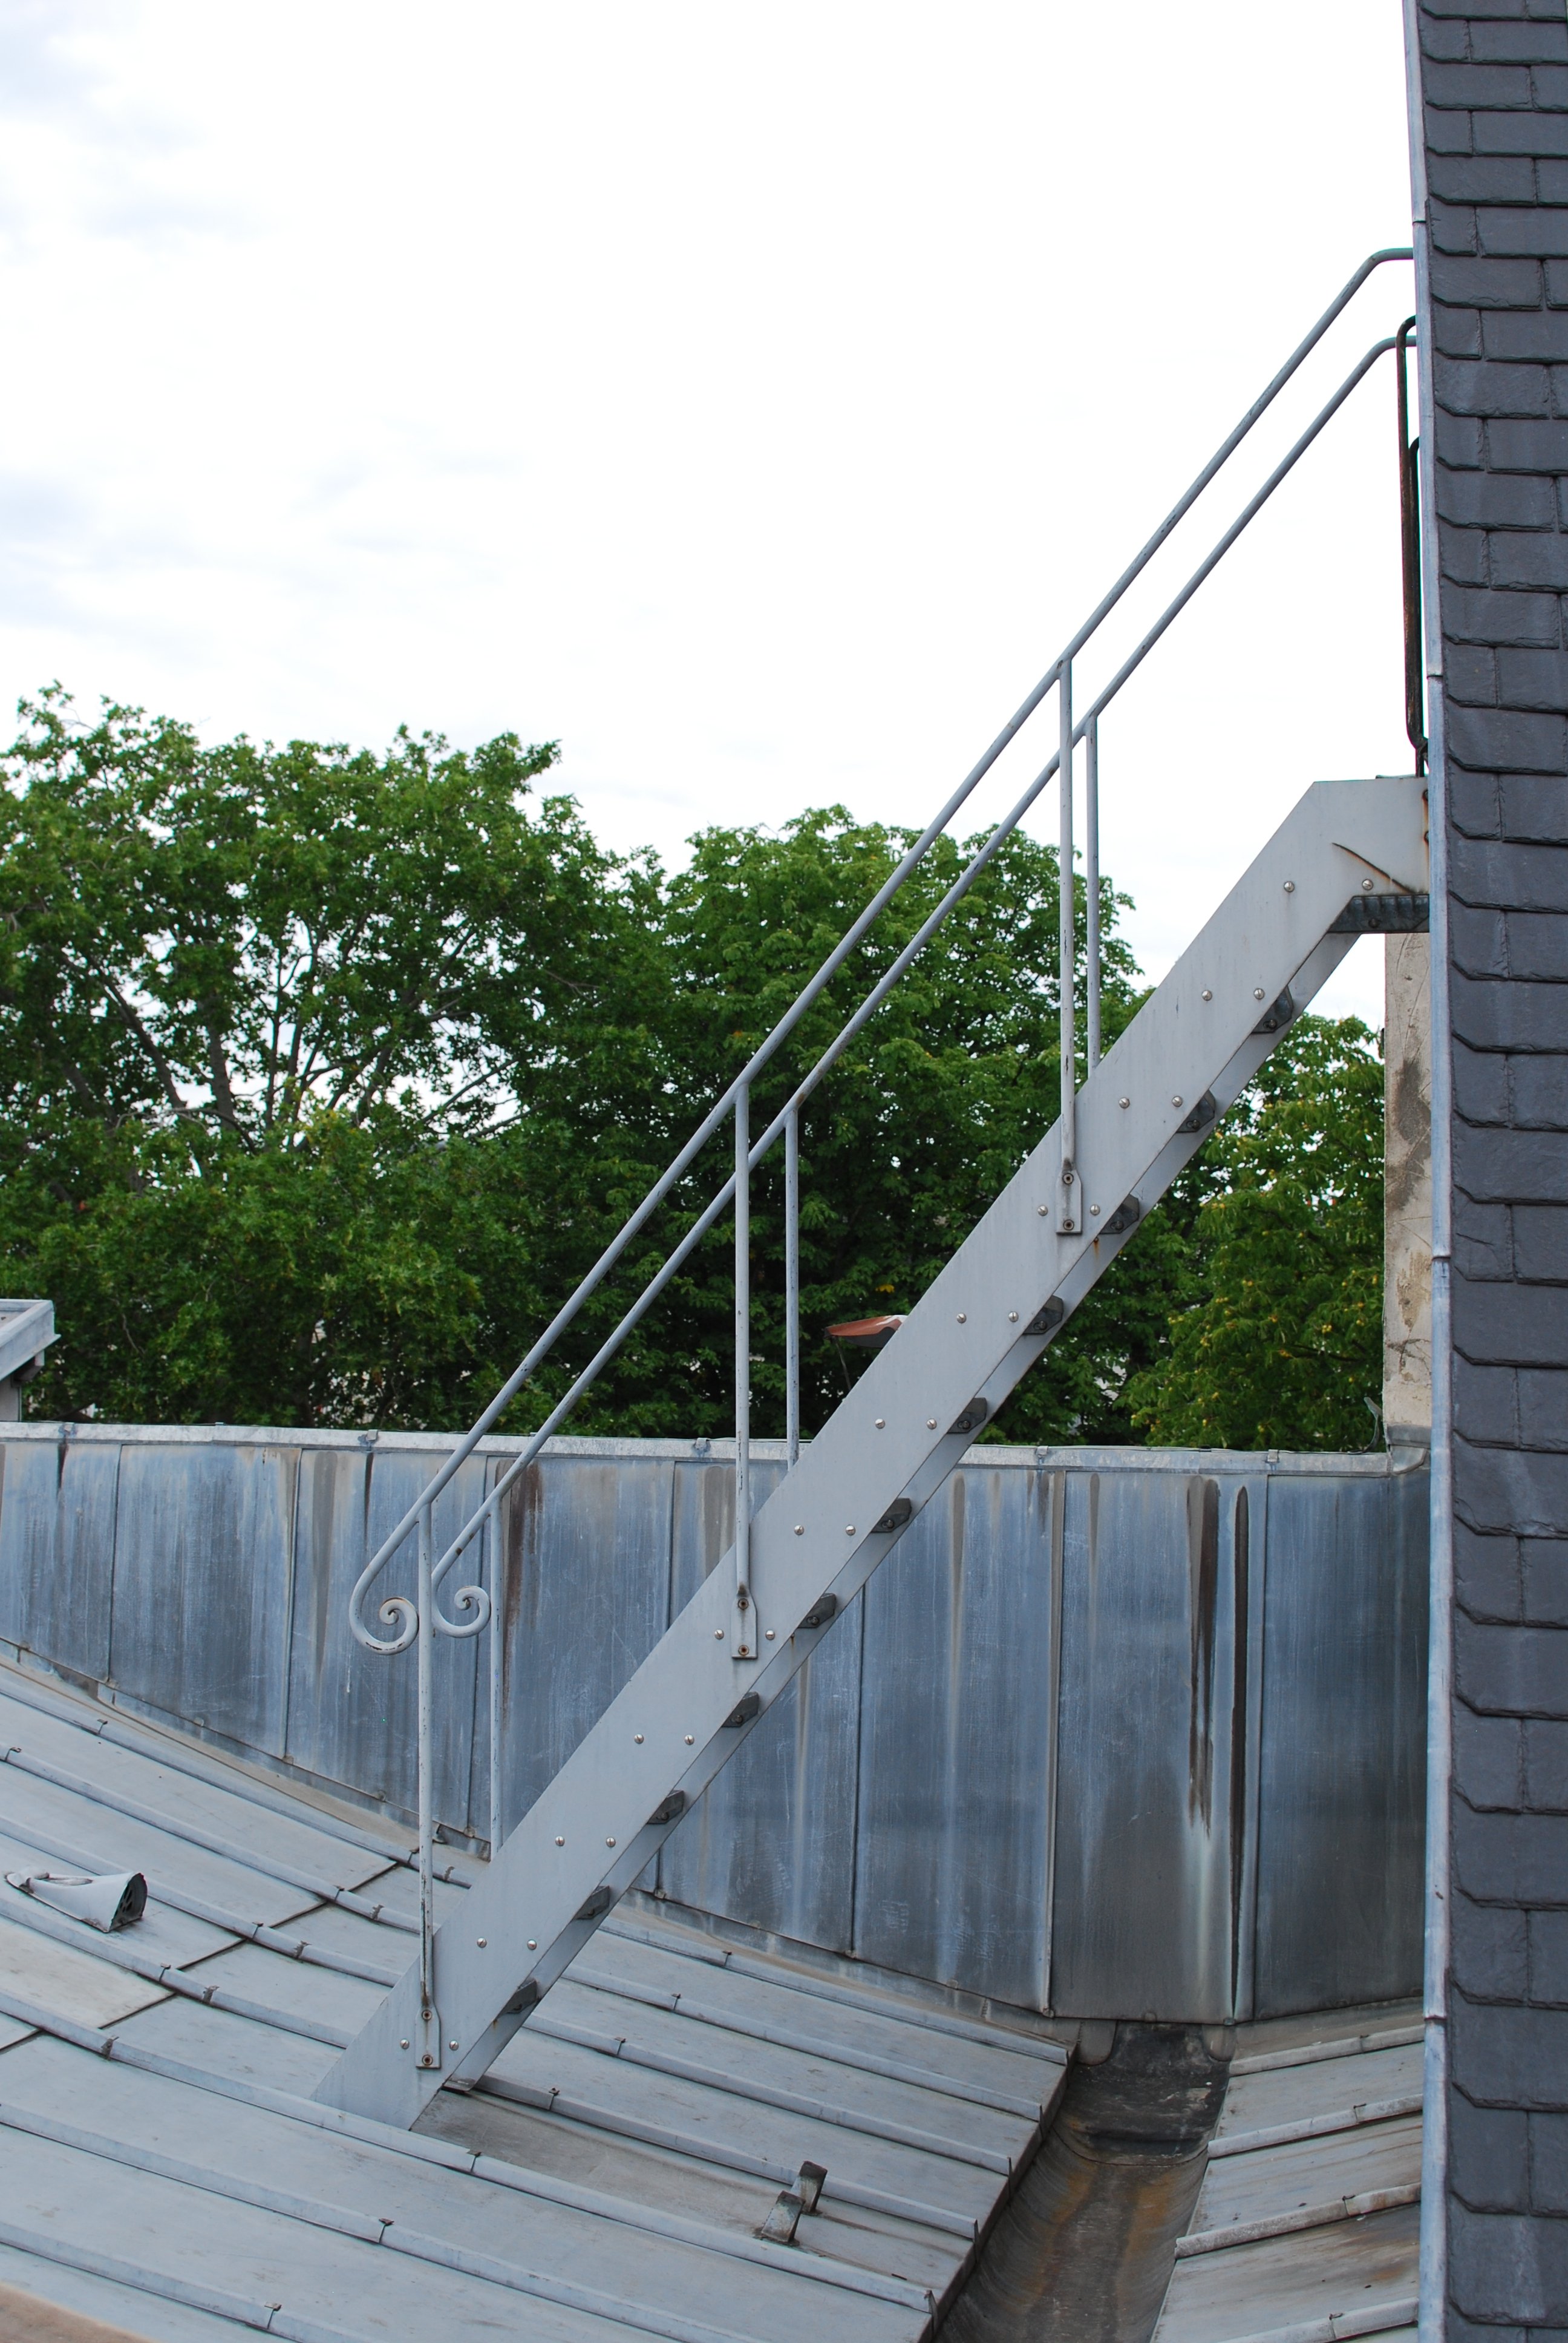 Escalier en métal vu de profil, émergeant du côté d'un bâtiment couvert d'ardoises, et descendant vers un toit en tôle presque plat.